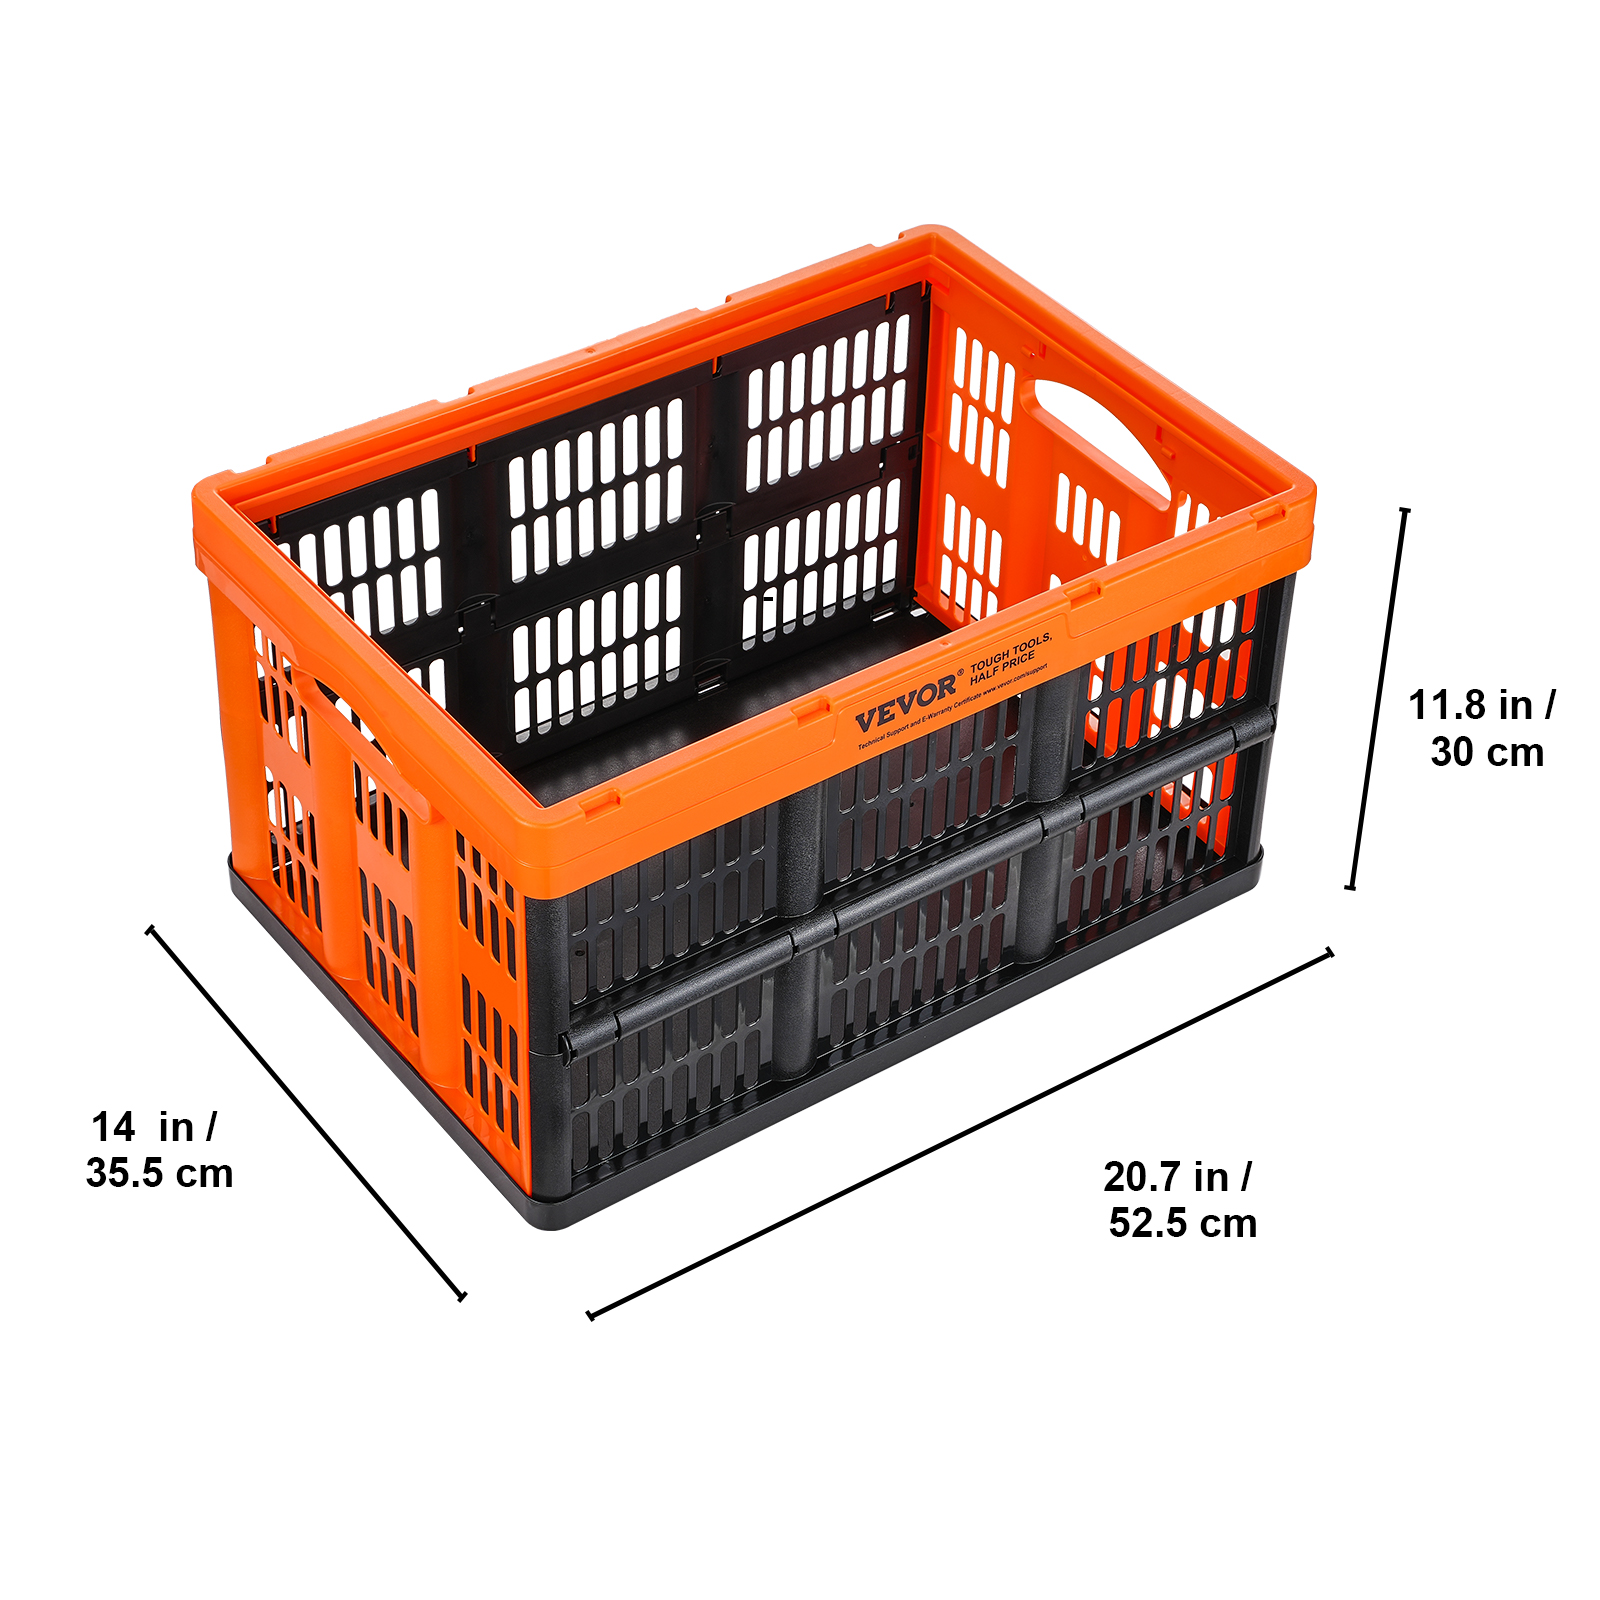 VEVOR 3er-Set 45L Profi & Faltbarer mit Box Transport Storage PP für Aufbewahrungsbox aus Stapelboxen Kisten Faltboxen Stapelbare Orange Handgriff Transportbox Klappbox Aufbewahrung